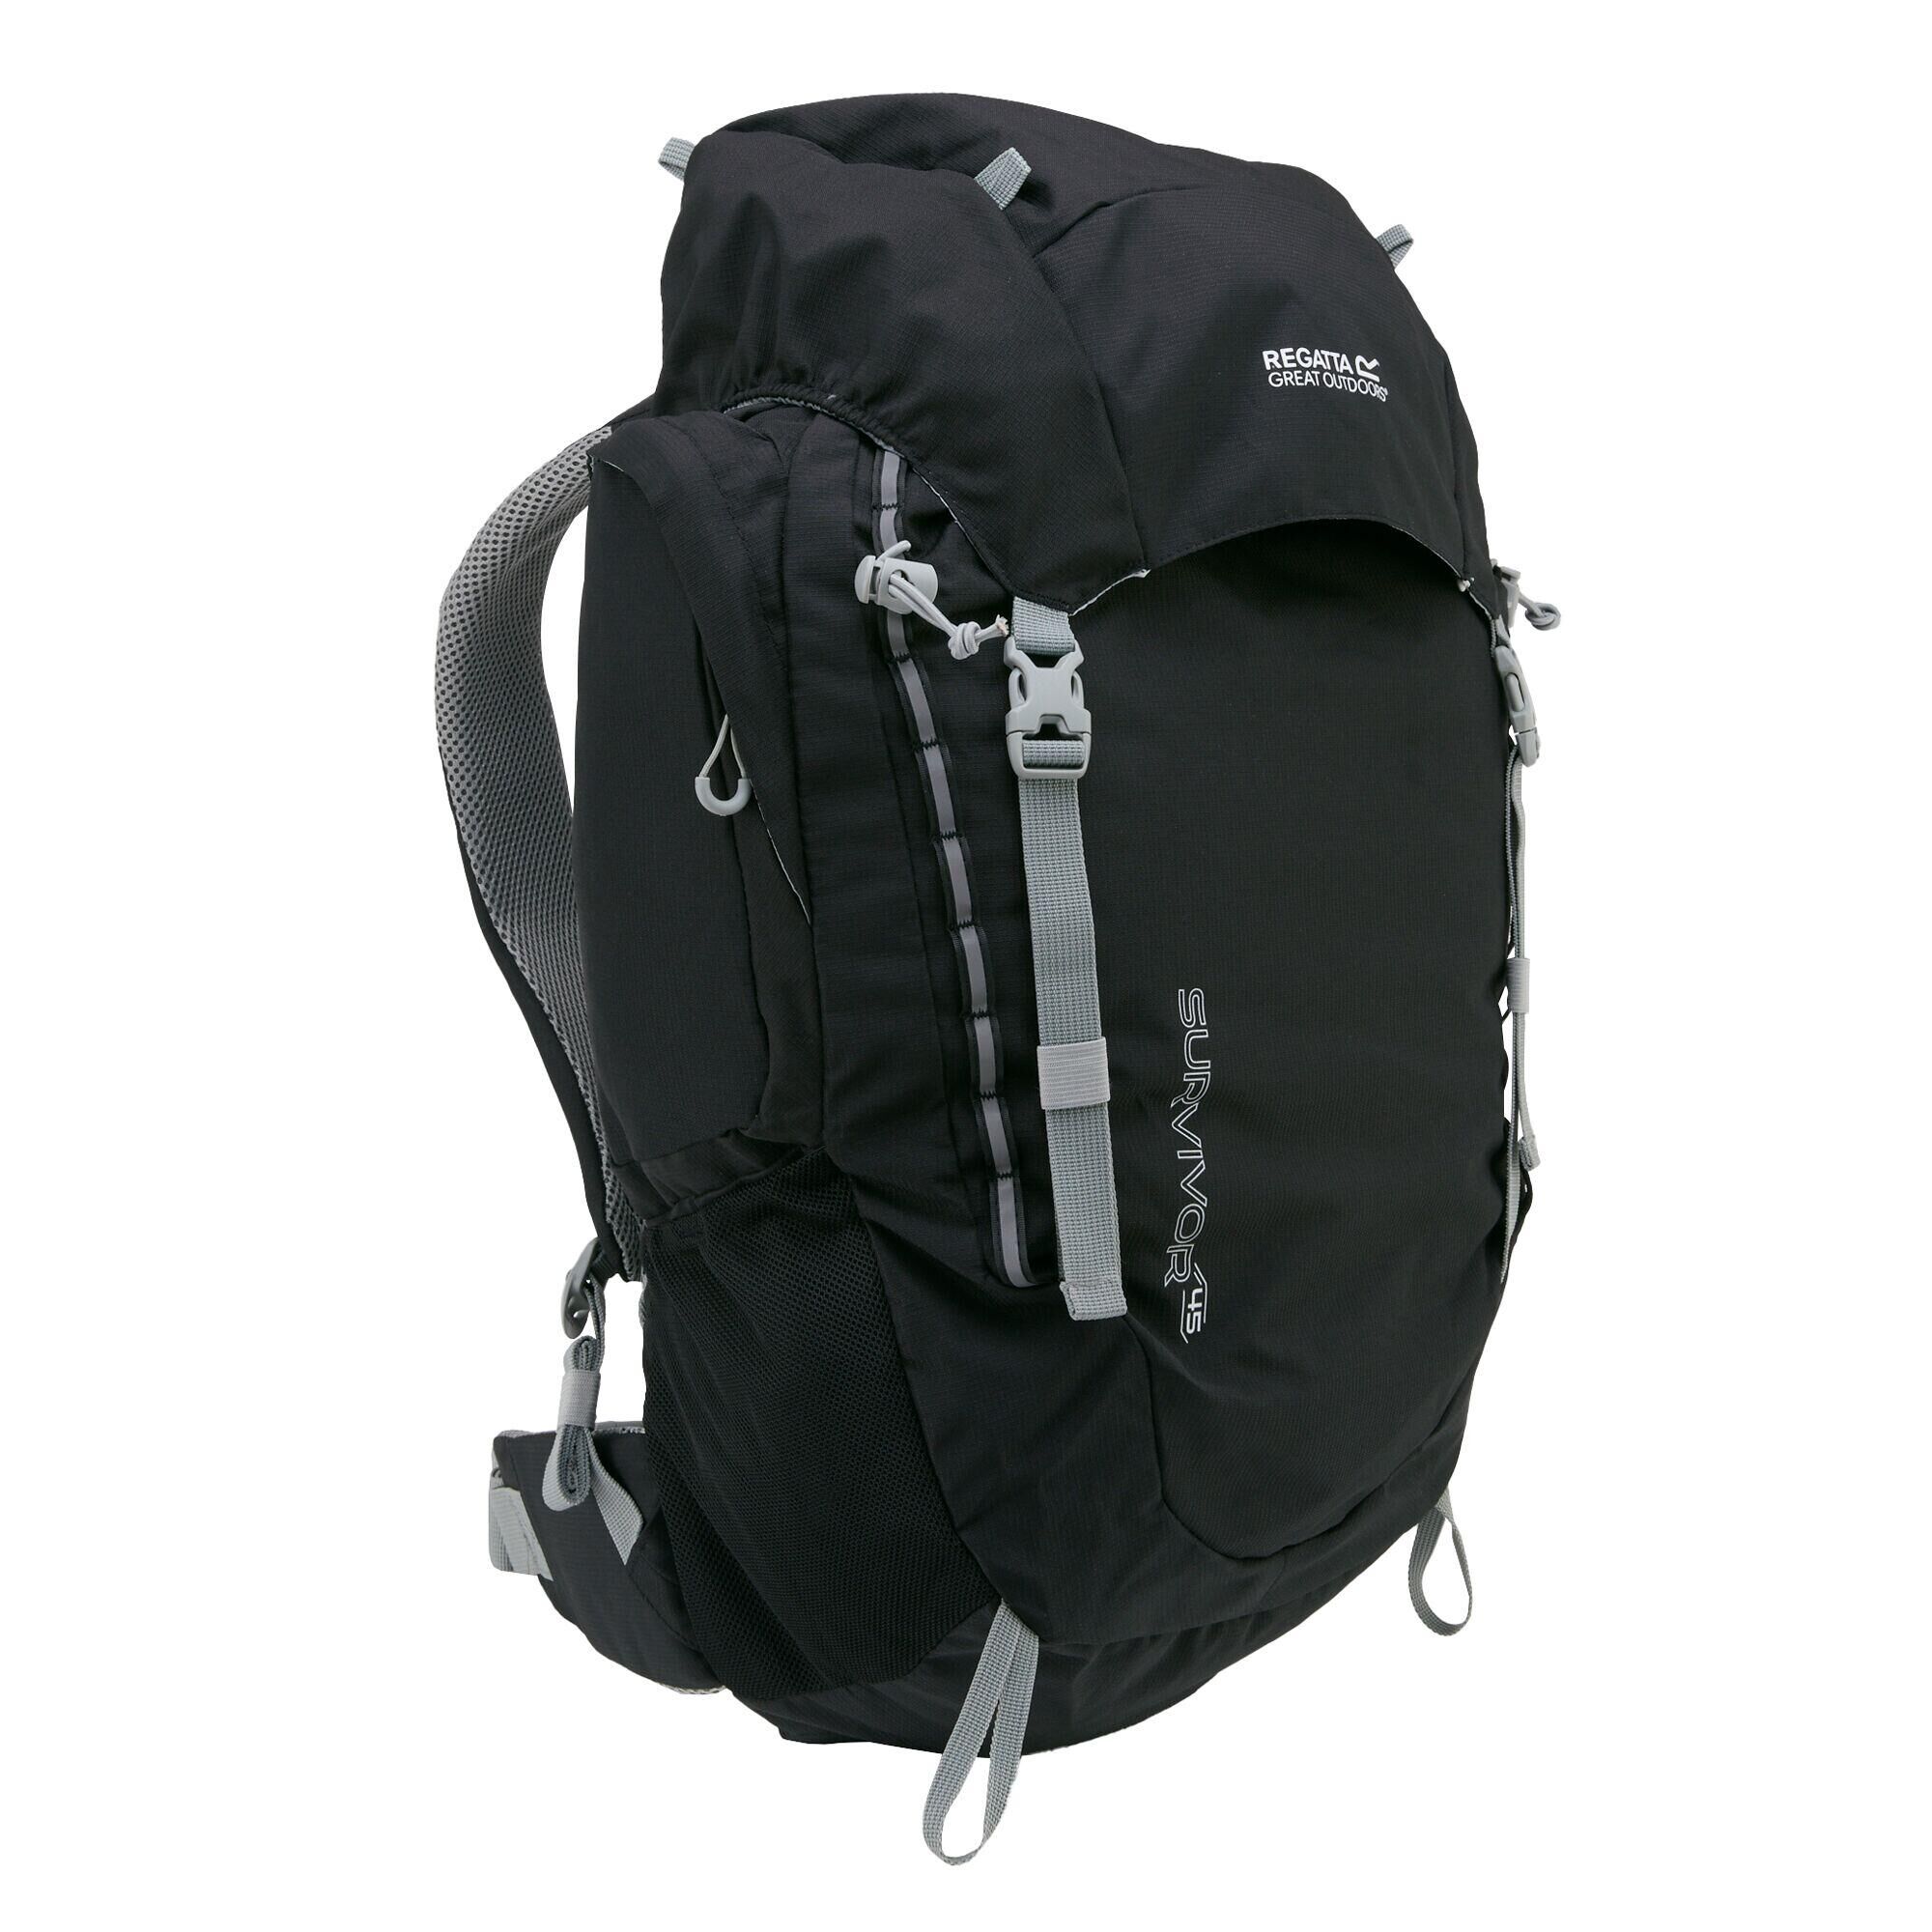 REGATTA Survivor V4 45L Hiking Backpack